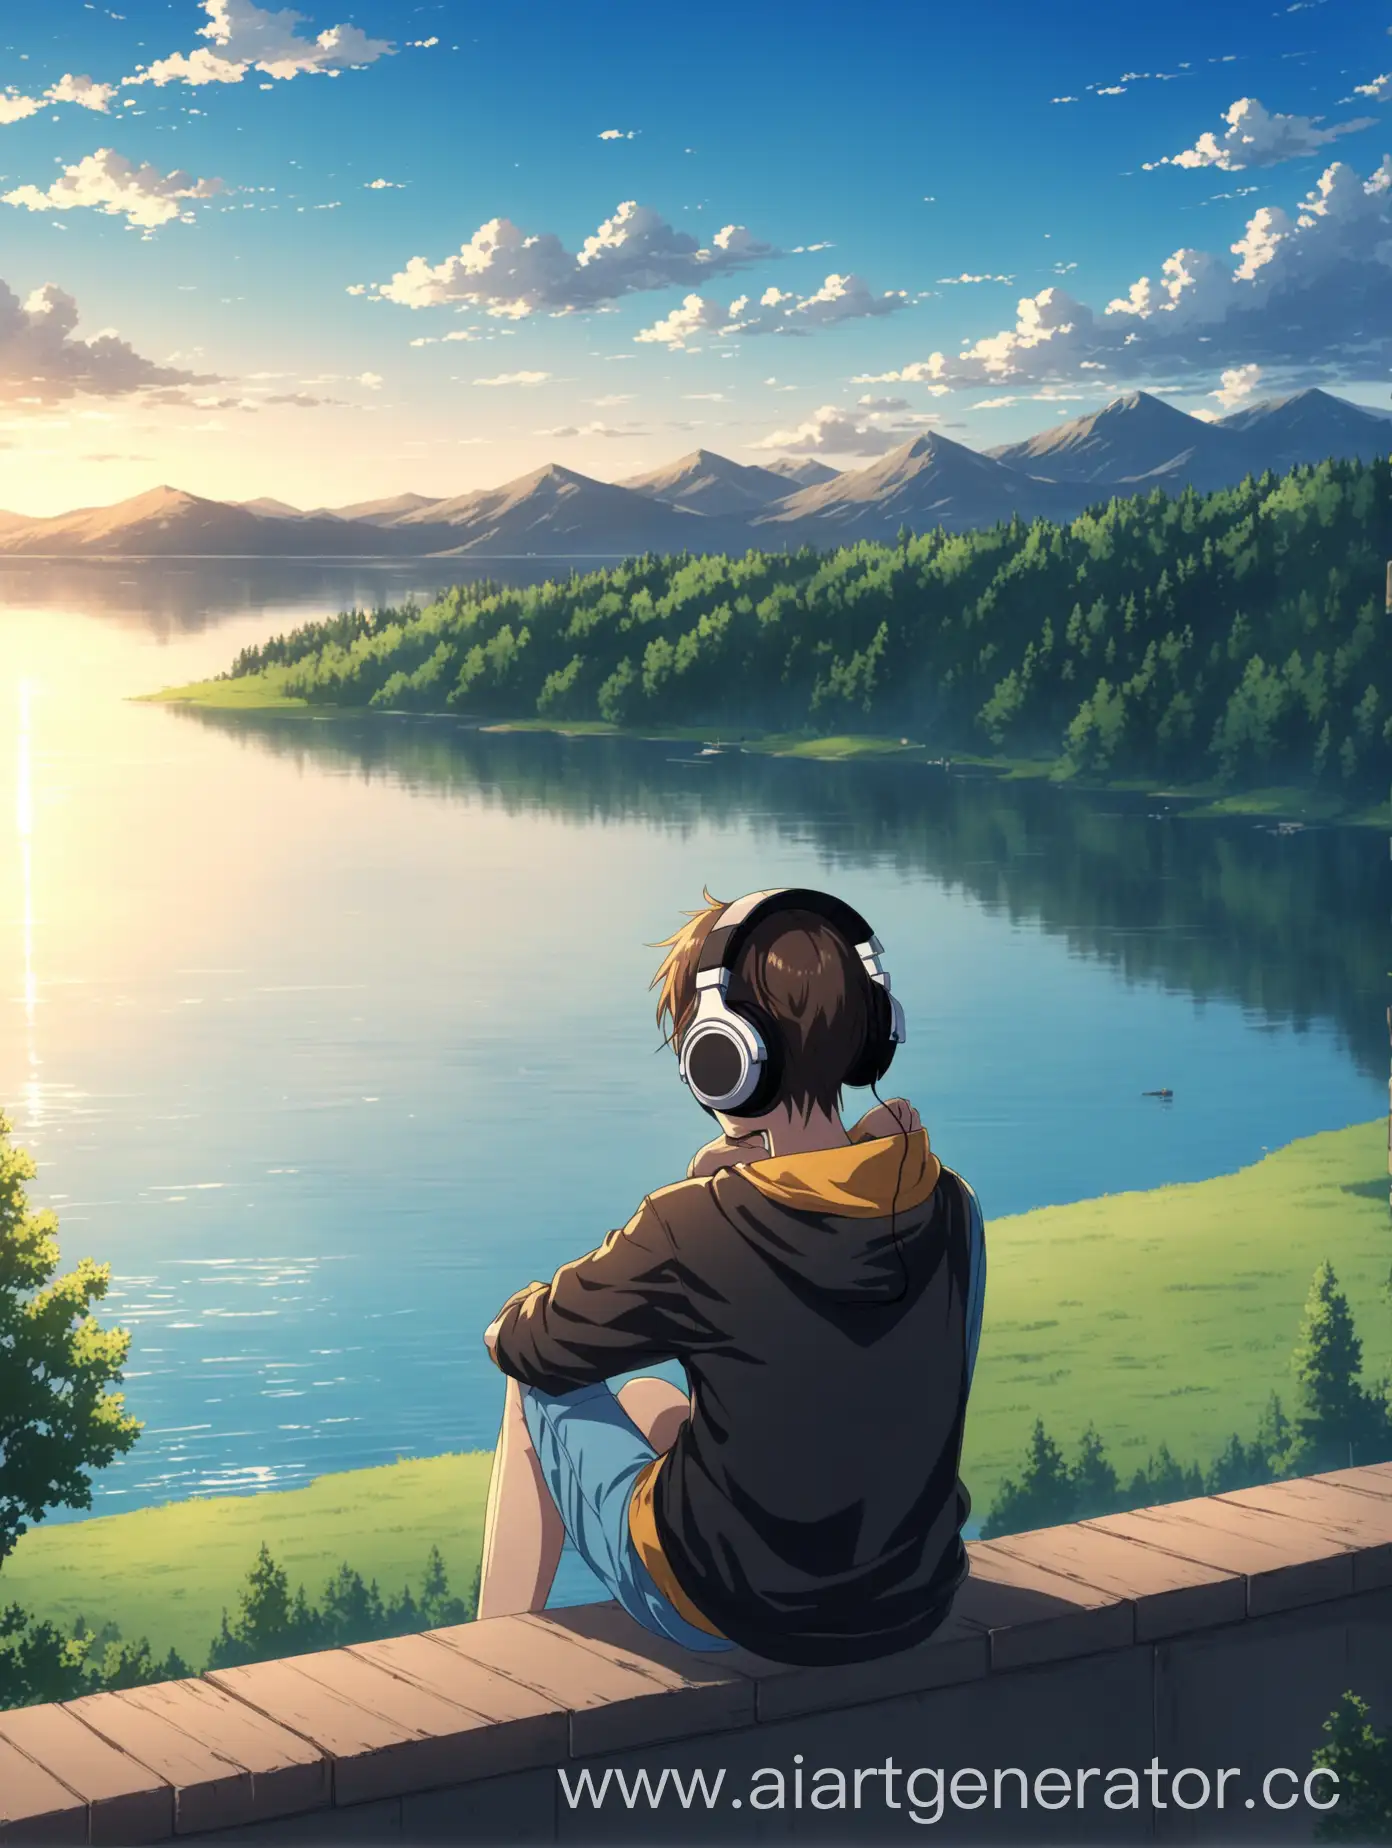 аниме персонаж, одиноко слушает музыку в наушниках и наслаждается видом на озеро